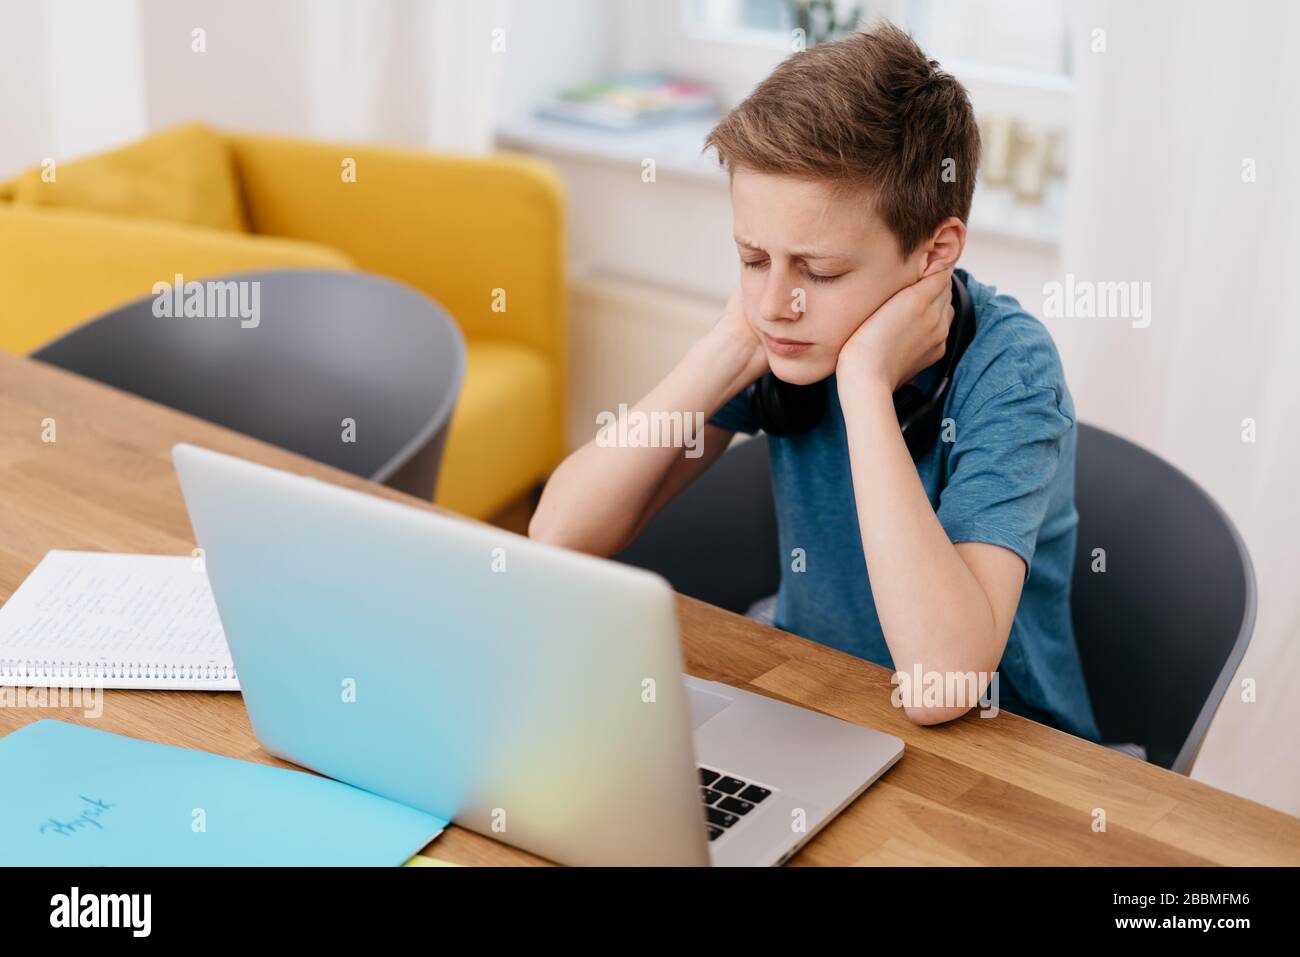 Der junge Junge, der sich auf sein E-Learning konzentriert, während er von zu Hause aus während des Covid-19-Lockdown-Sitzens auf einem Laptop arbeitet Stockfoto